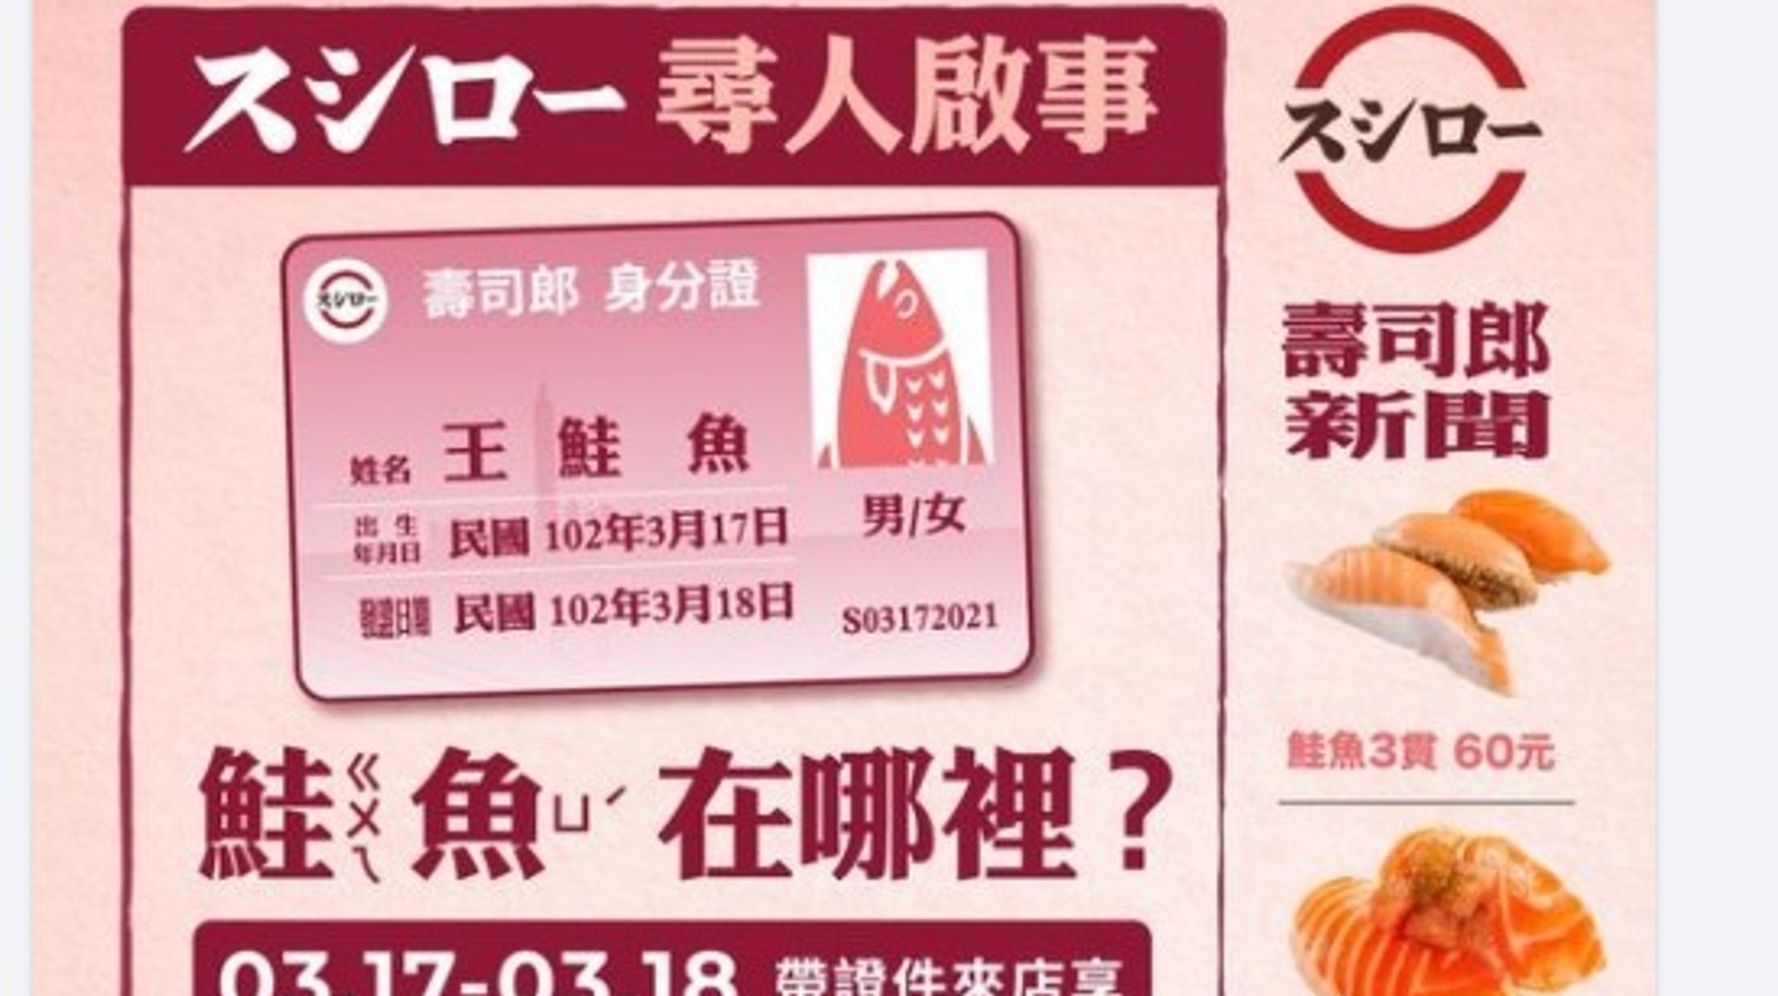 タダで寿司を食べるため 鮭魚 さけ に改名する人が続出 台湾 スシロー が起爆剤 当局も困惑 ハフポスト